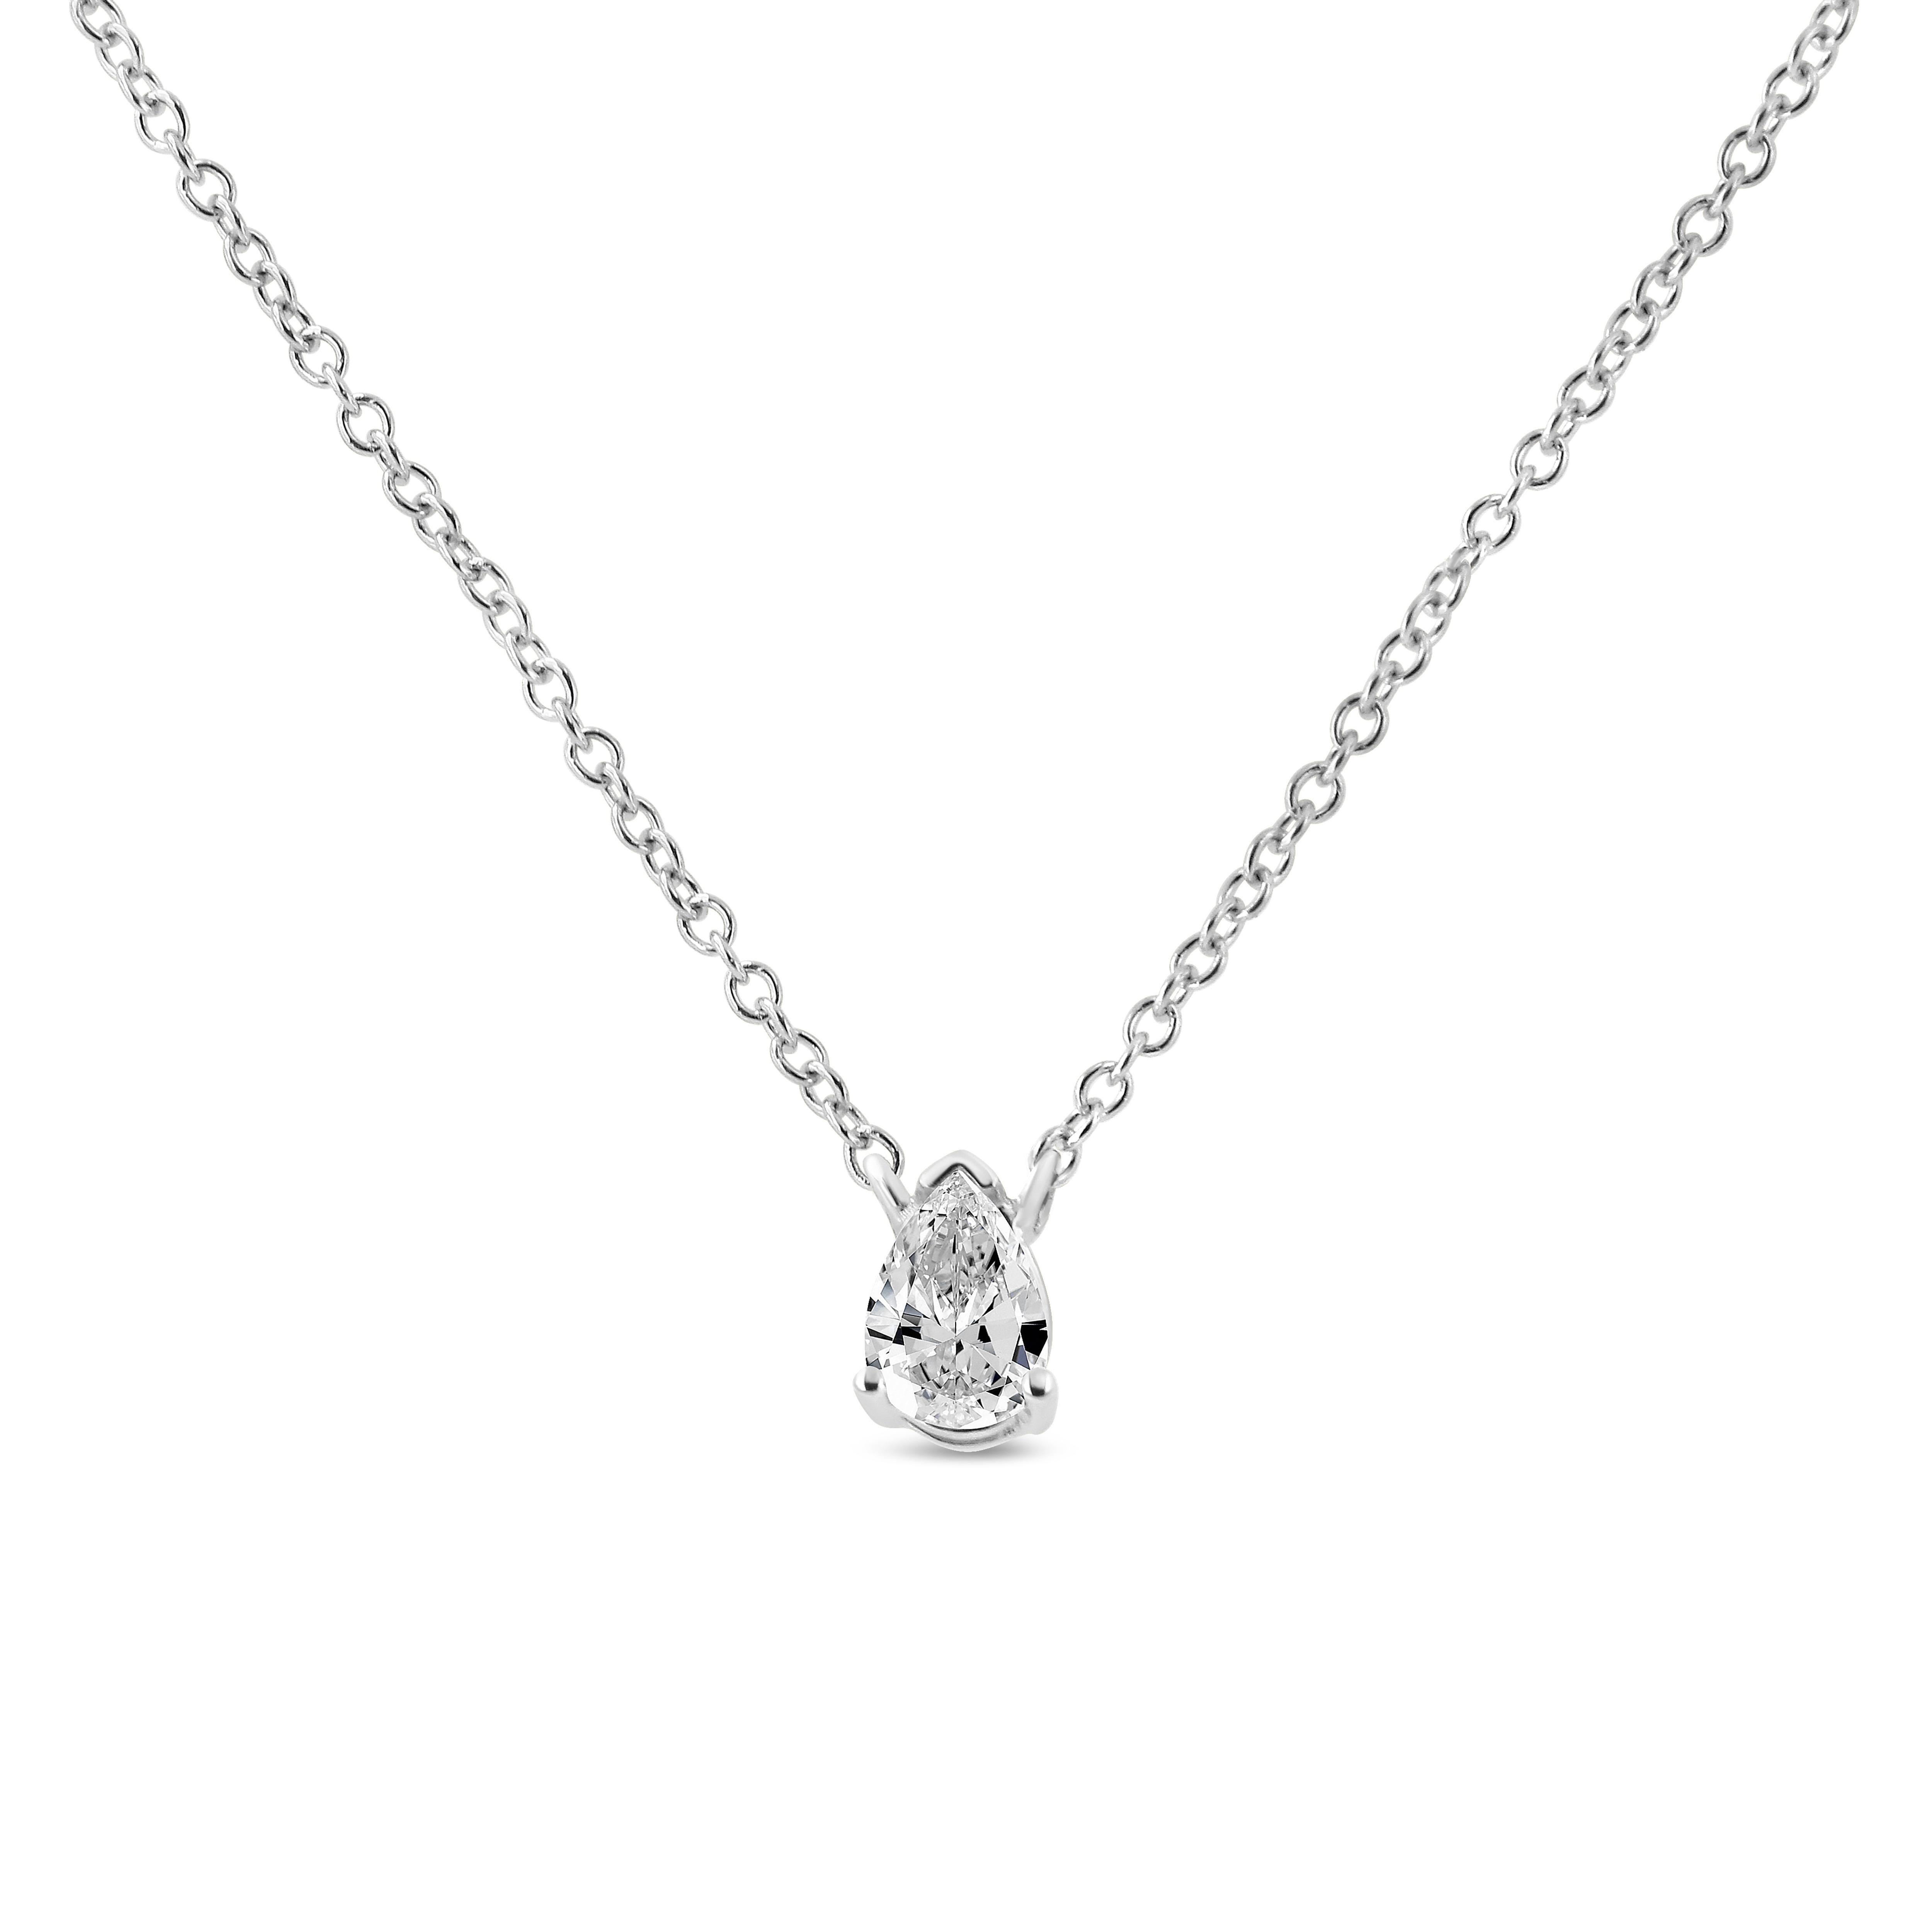 Exquisément conçu, ce collier pendentif solitaire en diamant met brillamment en valeur un diamant en forme de poire de 1/5 cttw, niché dans une broche à 4 branches. Il est réalisé en véritable or blanc 14k, un métal qui restera sans ternir pendant